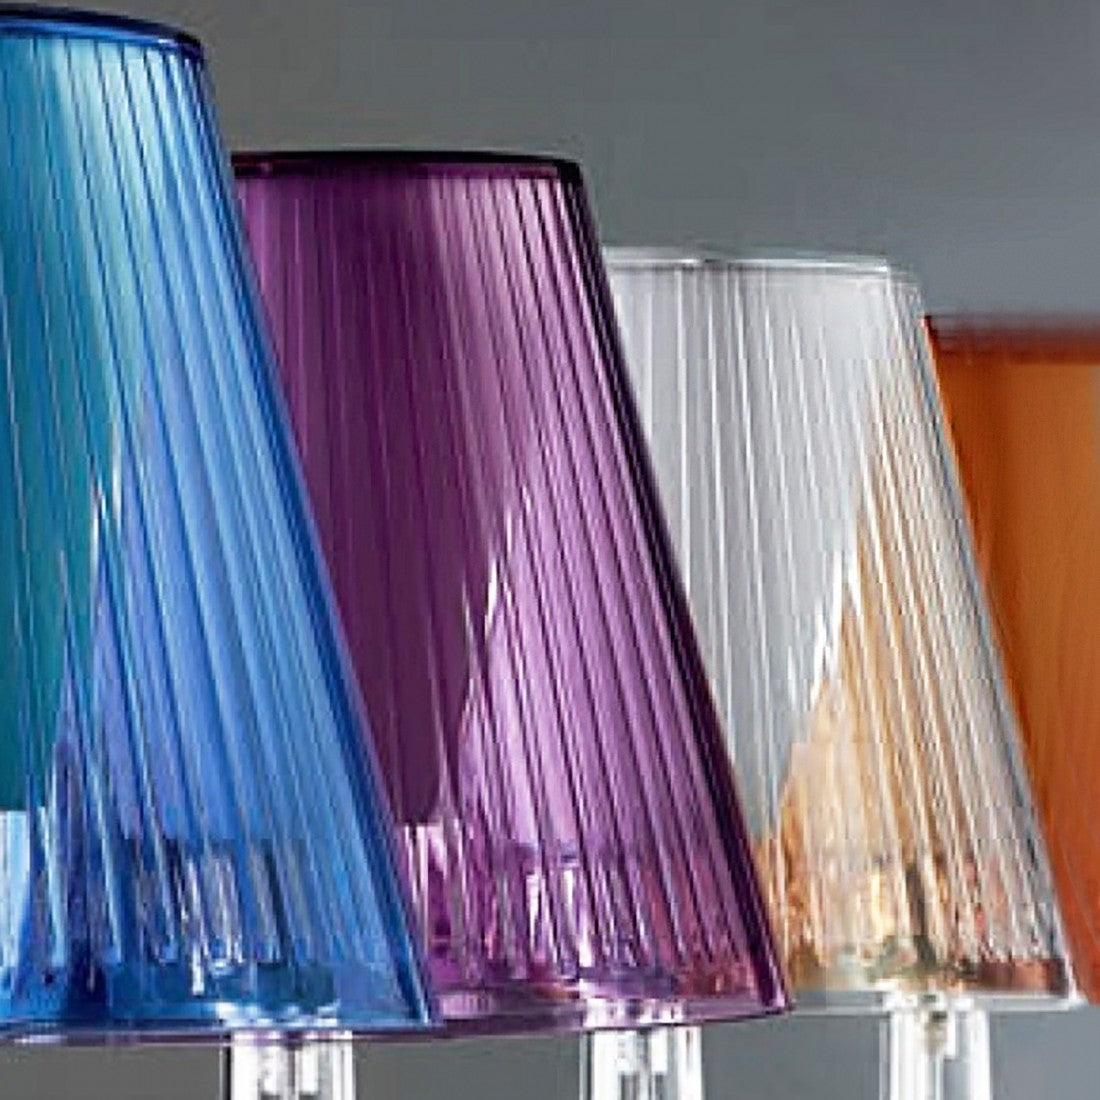 Abat-jour illuminando jolly p e27 led lampada tavolo moderna elegante colorata acrilico, colore viola